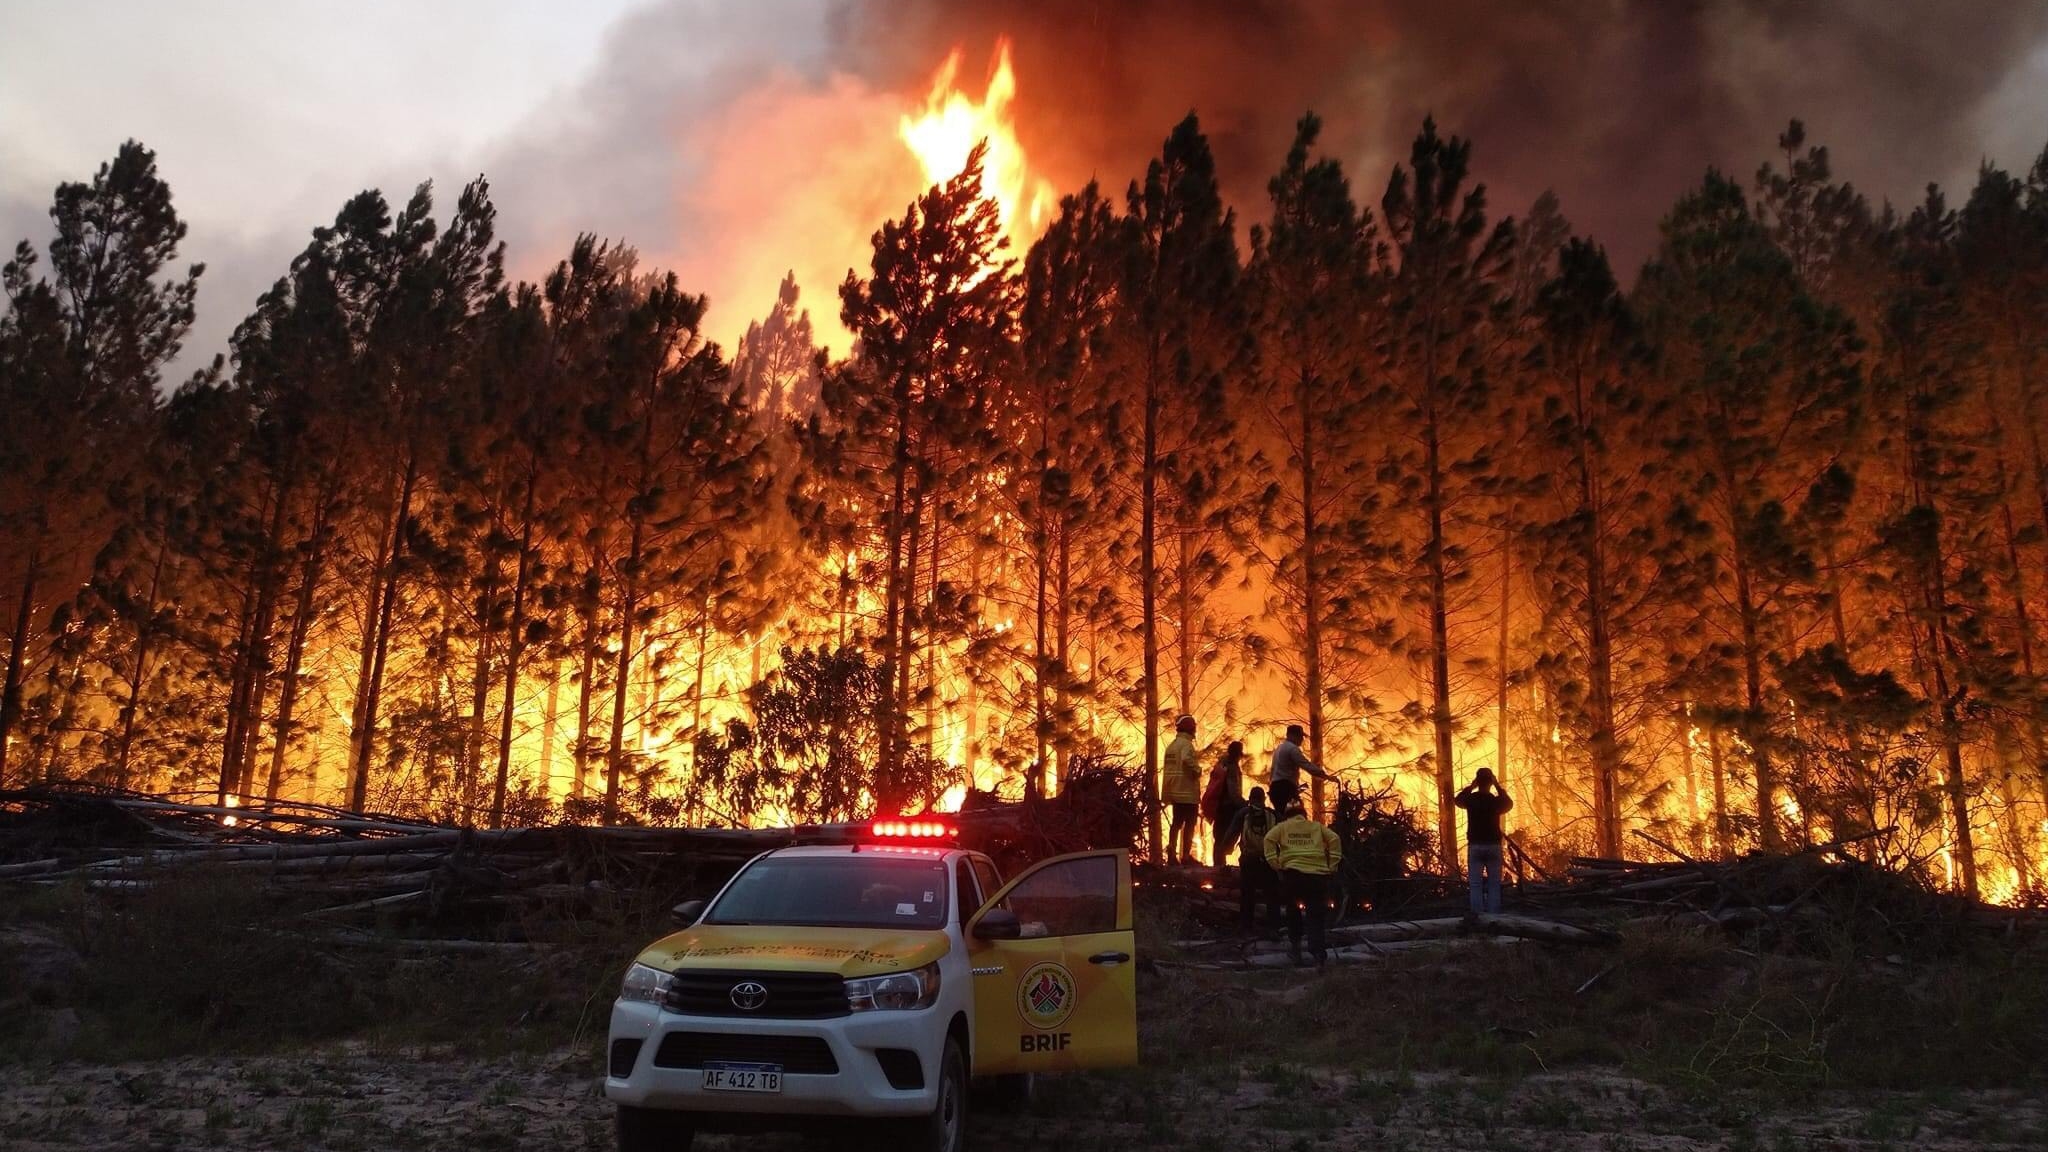 Los incendios en Corrientes en Argentina. El fuego afectó a más de 1 millón de hectáreas, el 12% de la superficie total de la provincia (Fotos: Twitter @AMBLUISM)